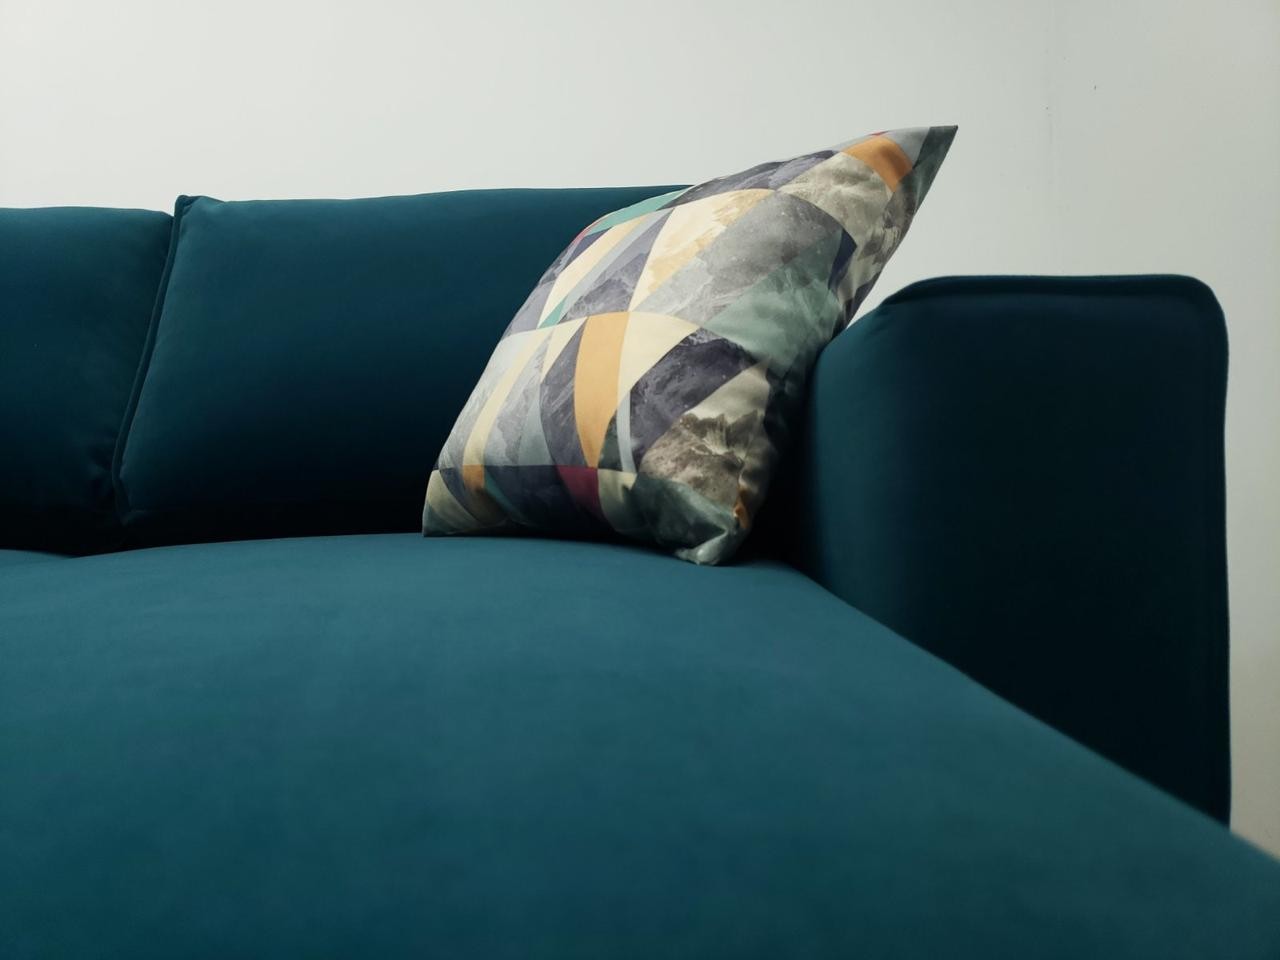 Угловой диван Руди 247/108,ножки натуральный цвет дерева,ткань Spark 09(голубая),угол 7 как на фото 03-26-order фото